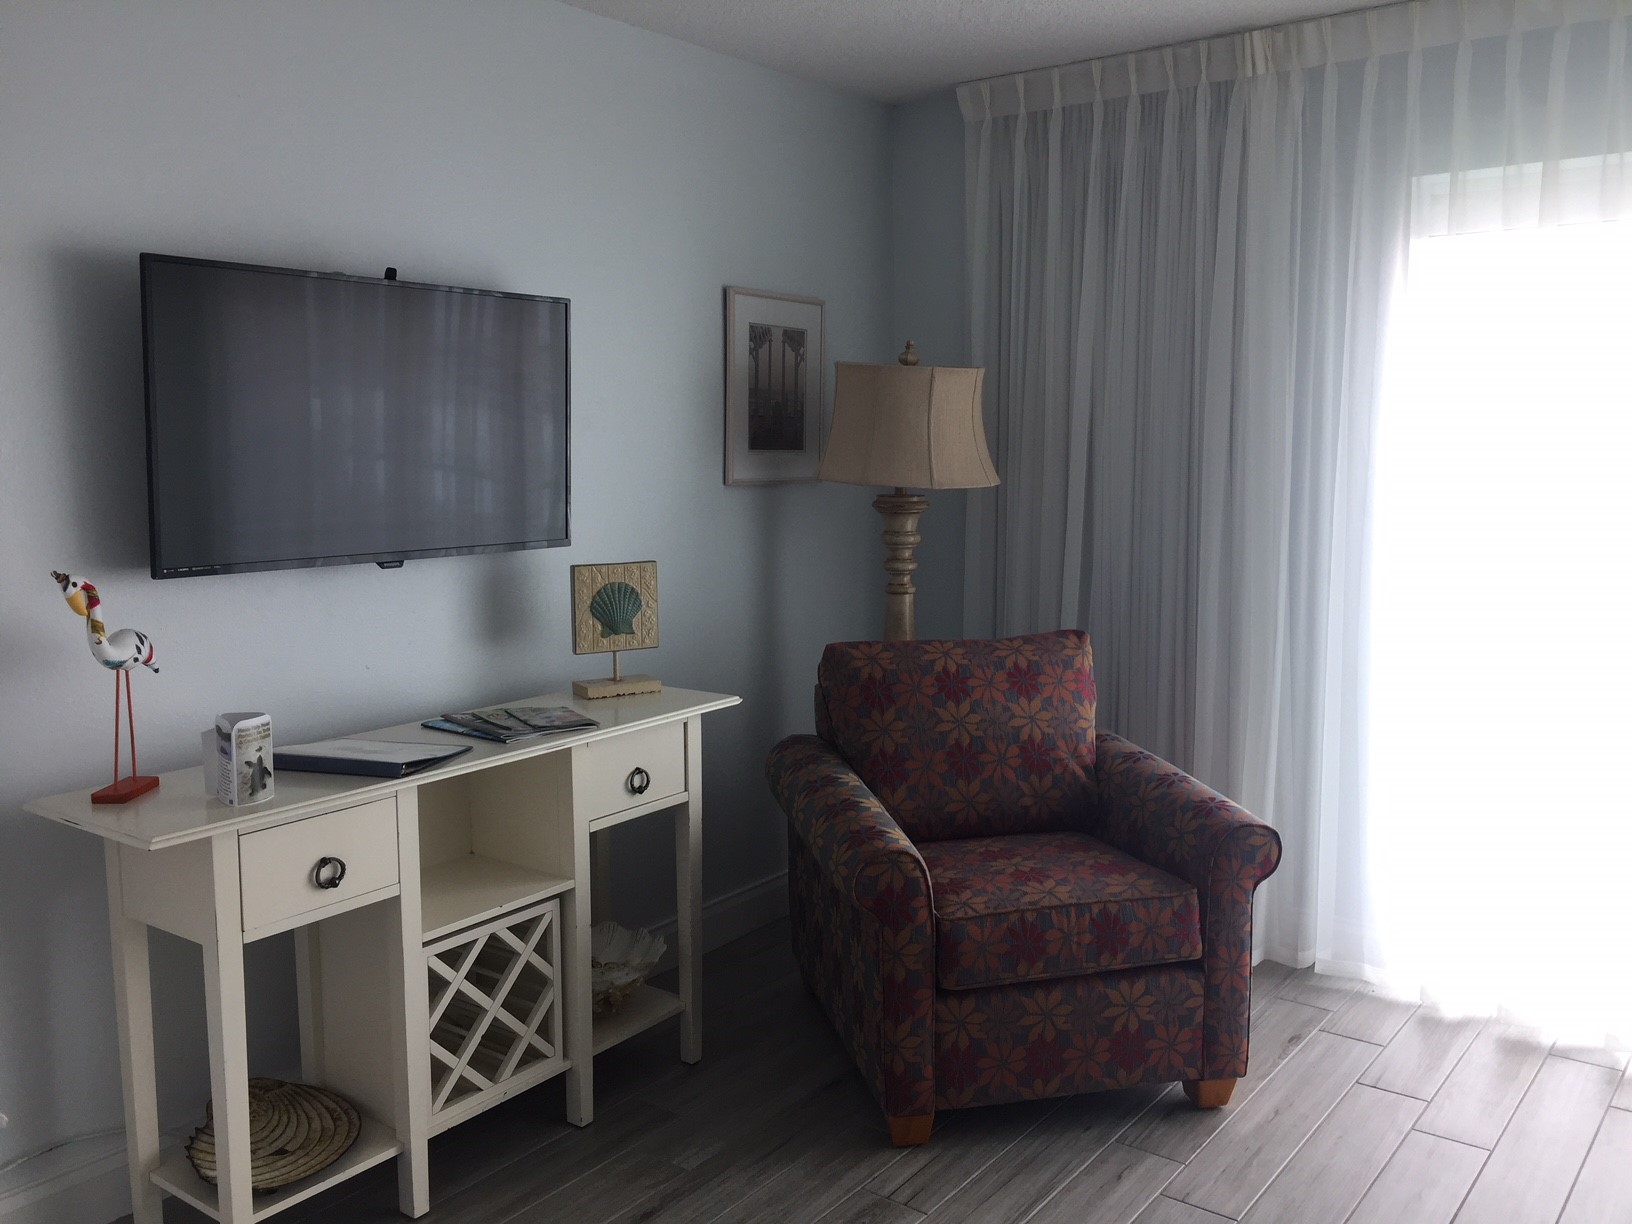 TV in living room and bedroom of 1-bedroom suite